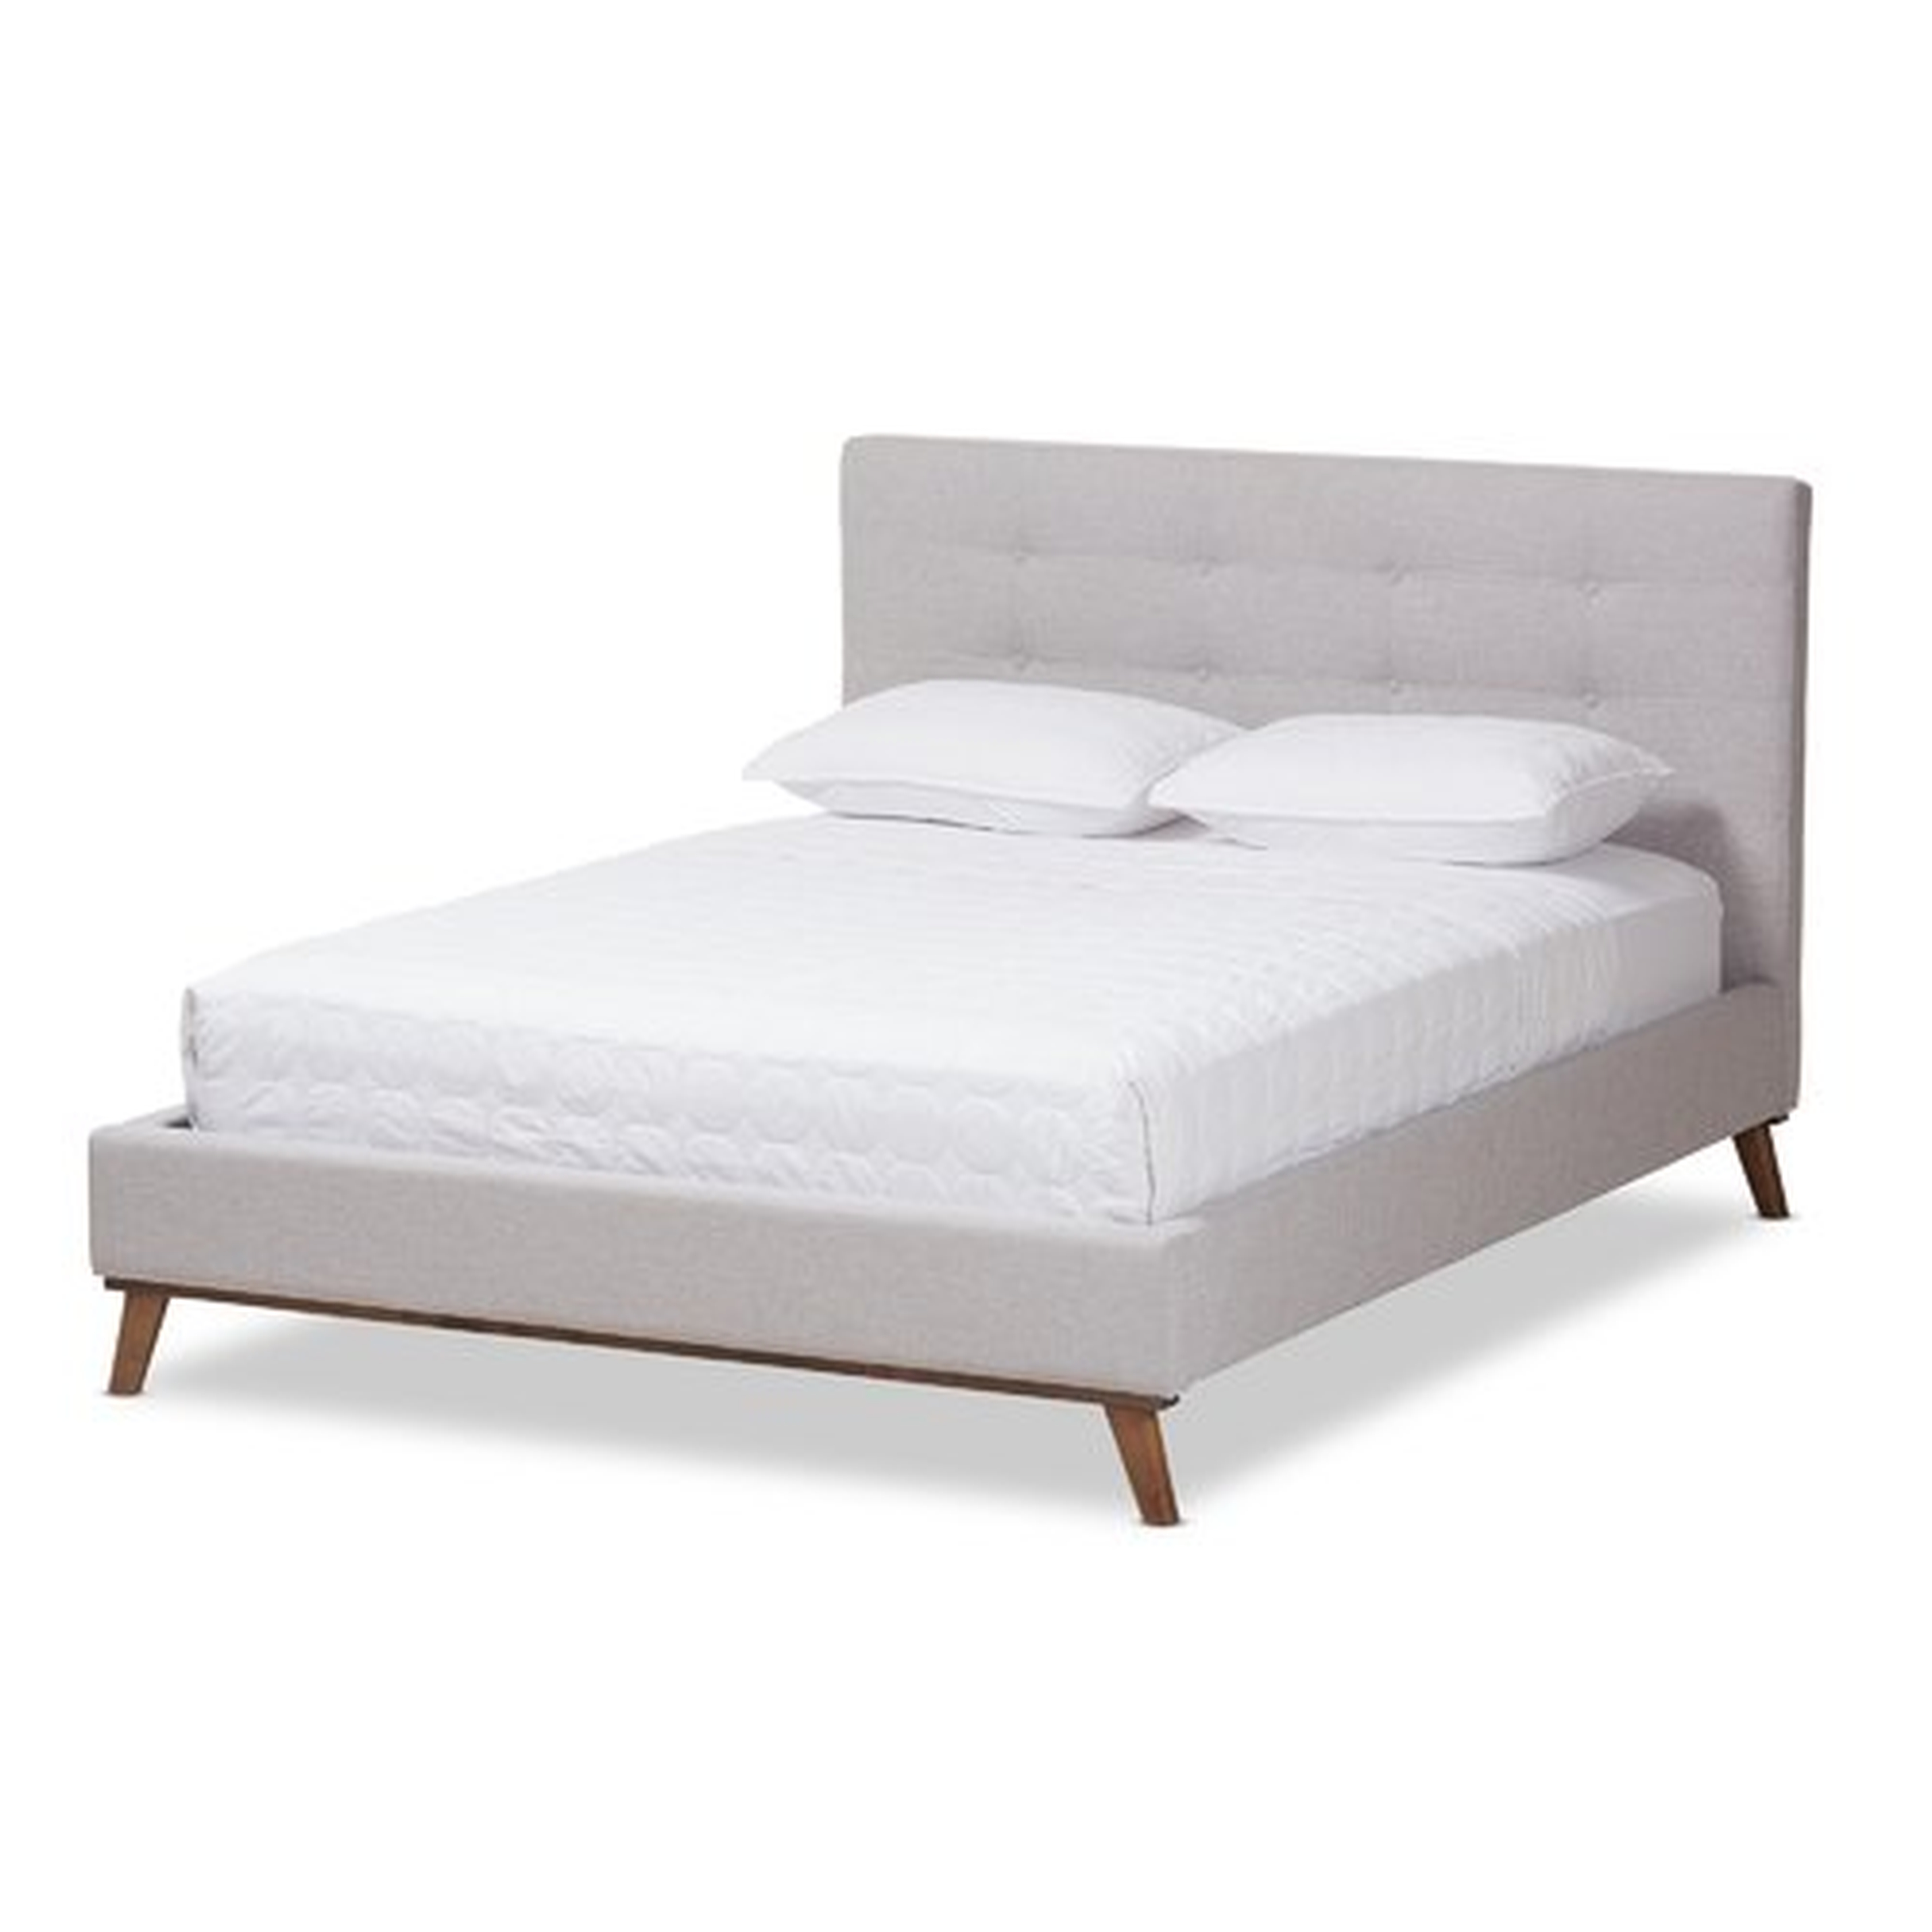 Jeterson Upholstered Platform Bed, King - Grayish Beige - AllModern